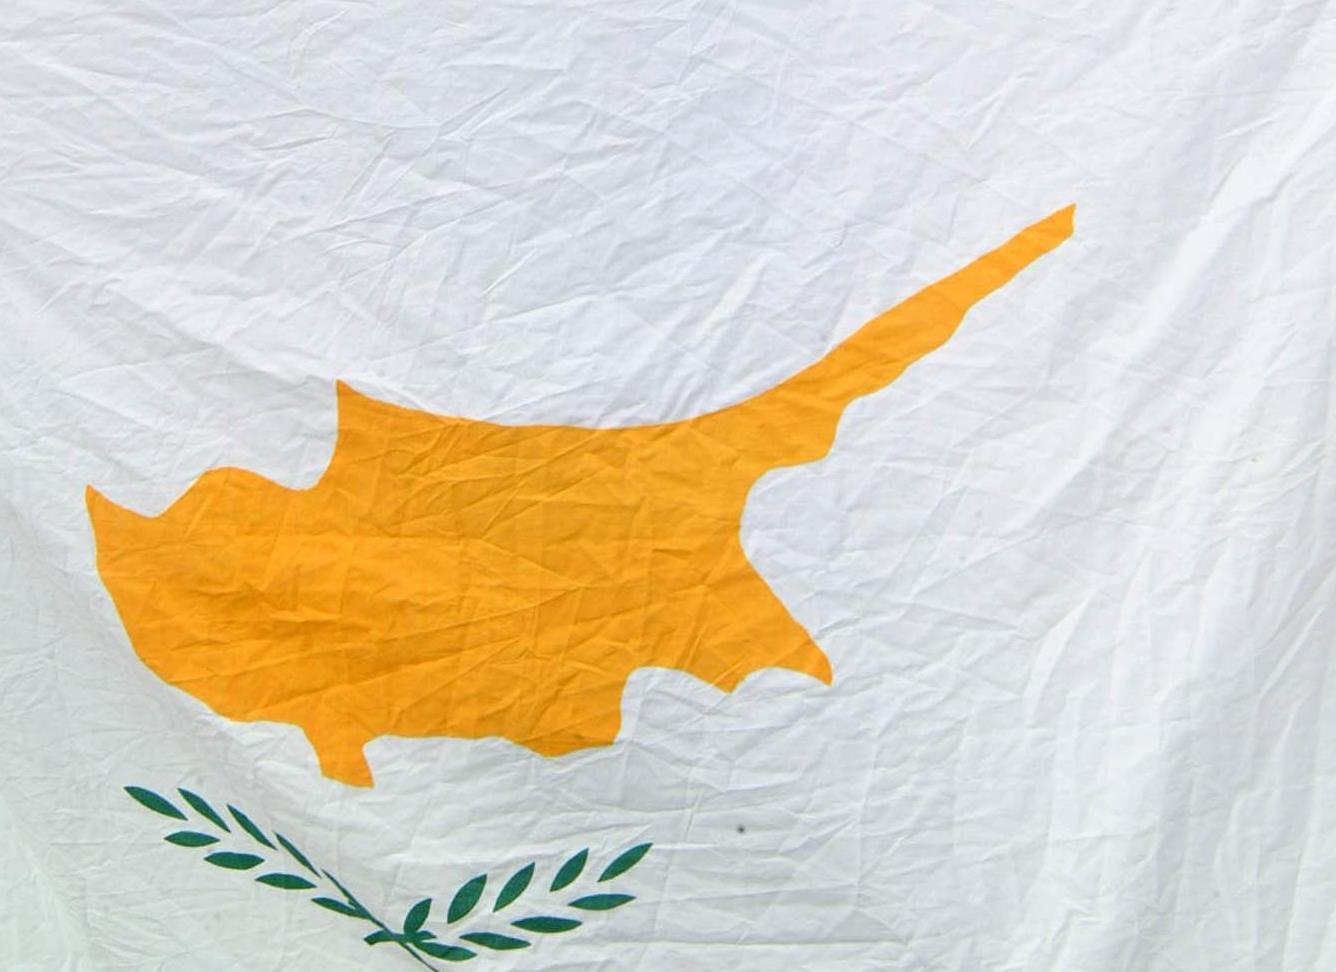 Κύπρος: Συμφωνία στρατιωτικής συνεργασίας με την Ιορδανία